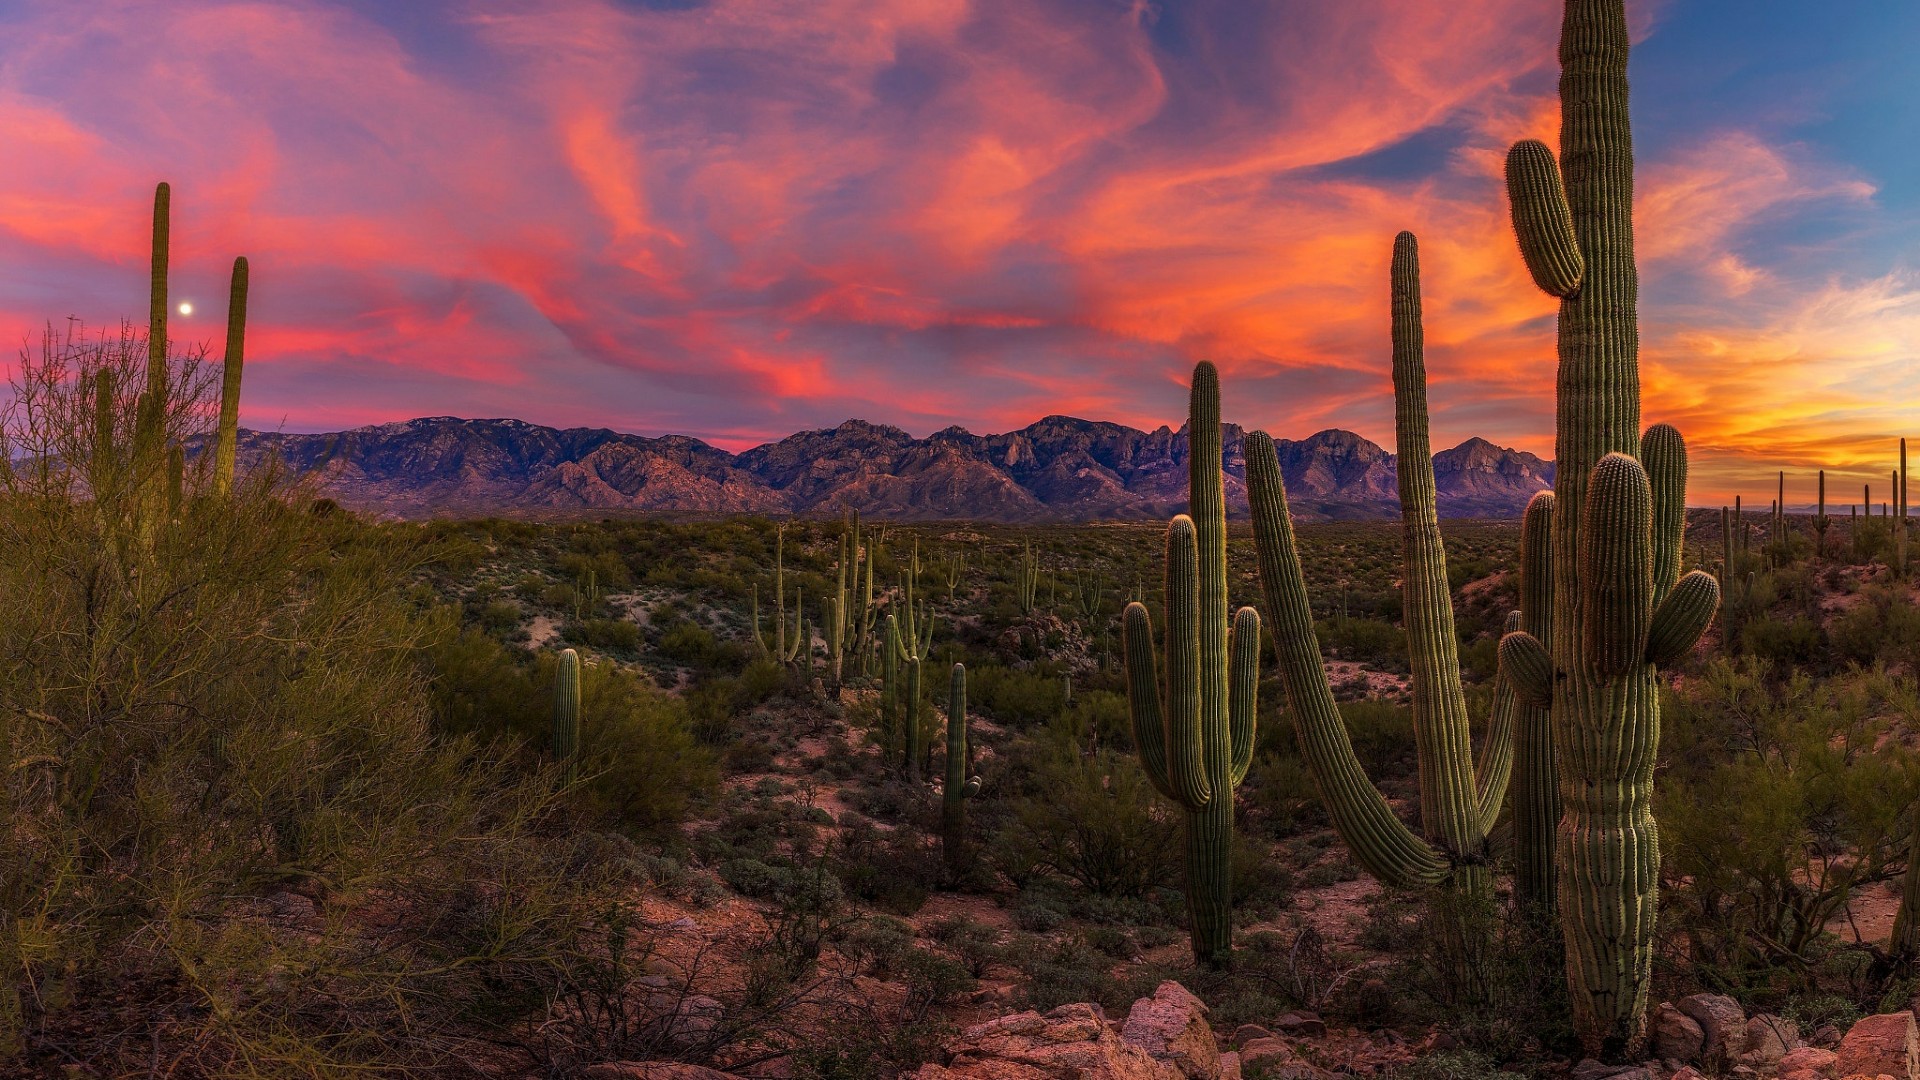 Saguaro Cactus in the Sonoran Desert at sunset - Arizona wallpaper